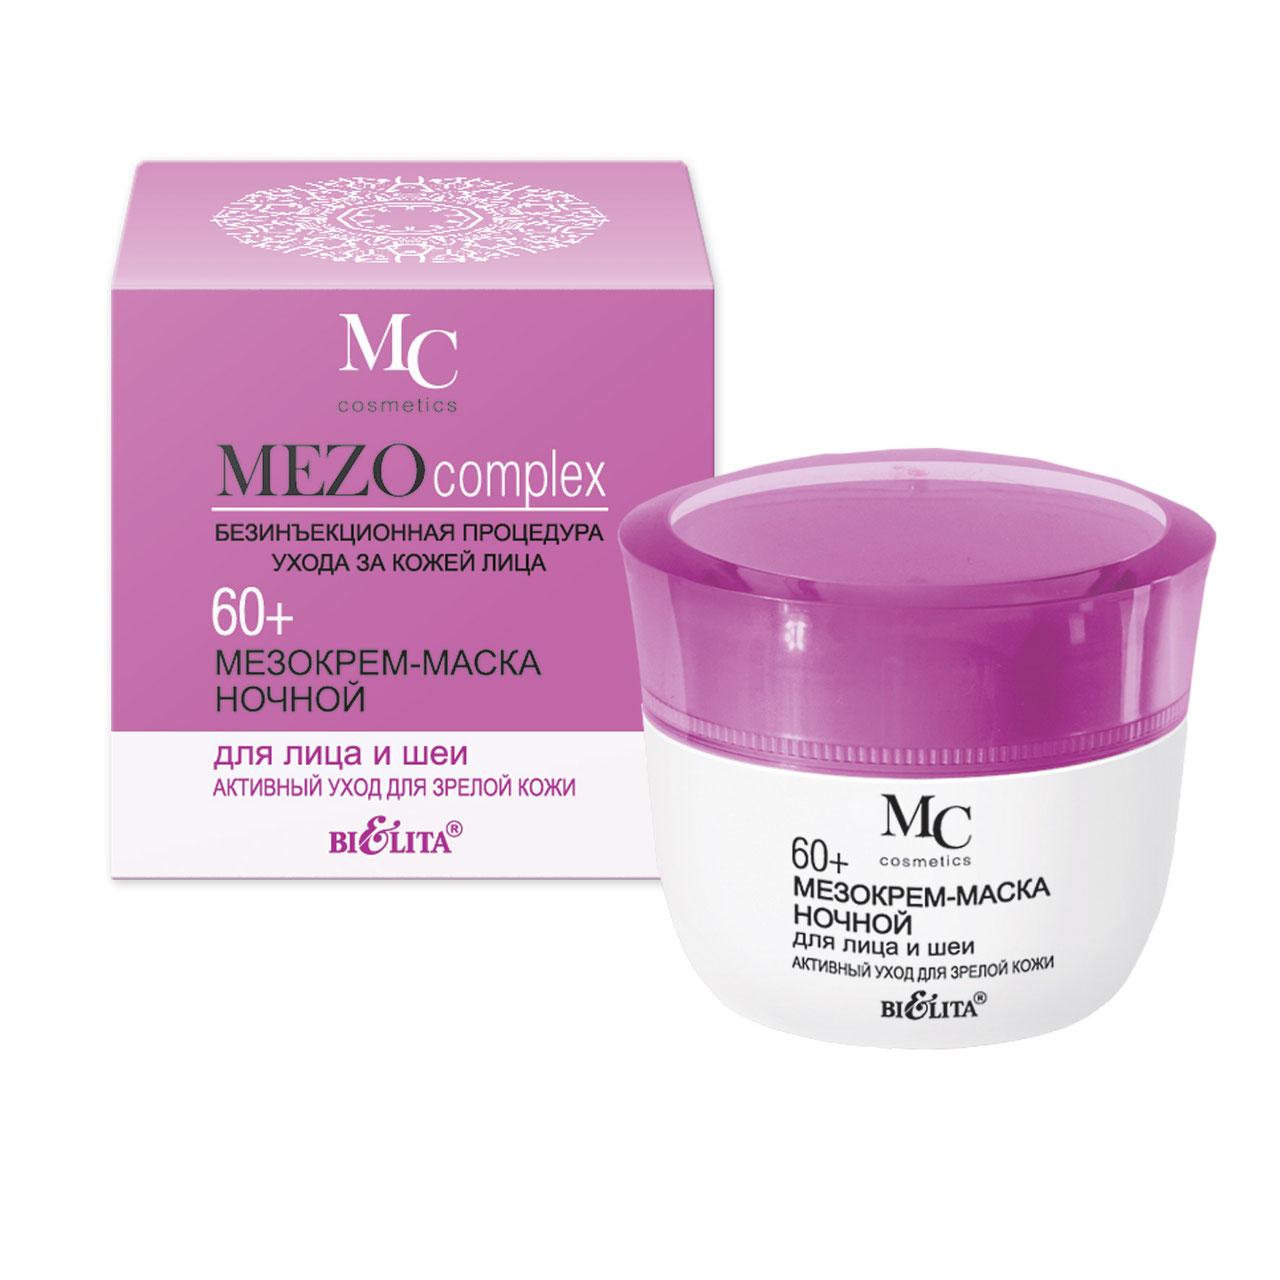 Мезокрем-маска для лица и шеи Bielita MEZOcomplex 60+ ночной Активный уход для зрелой кожи